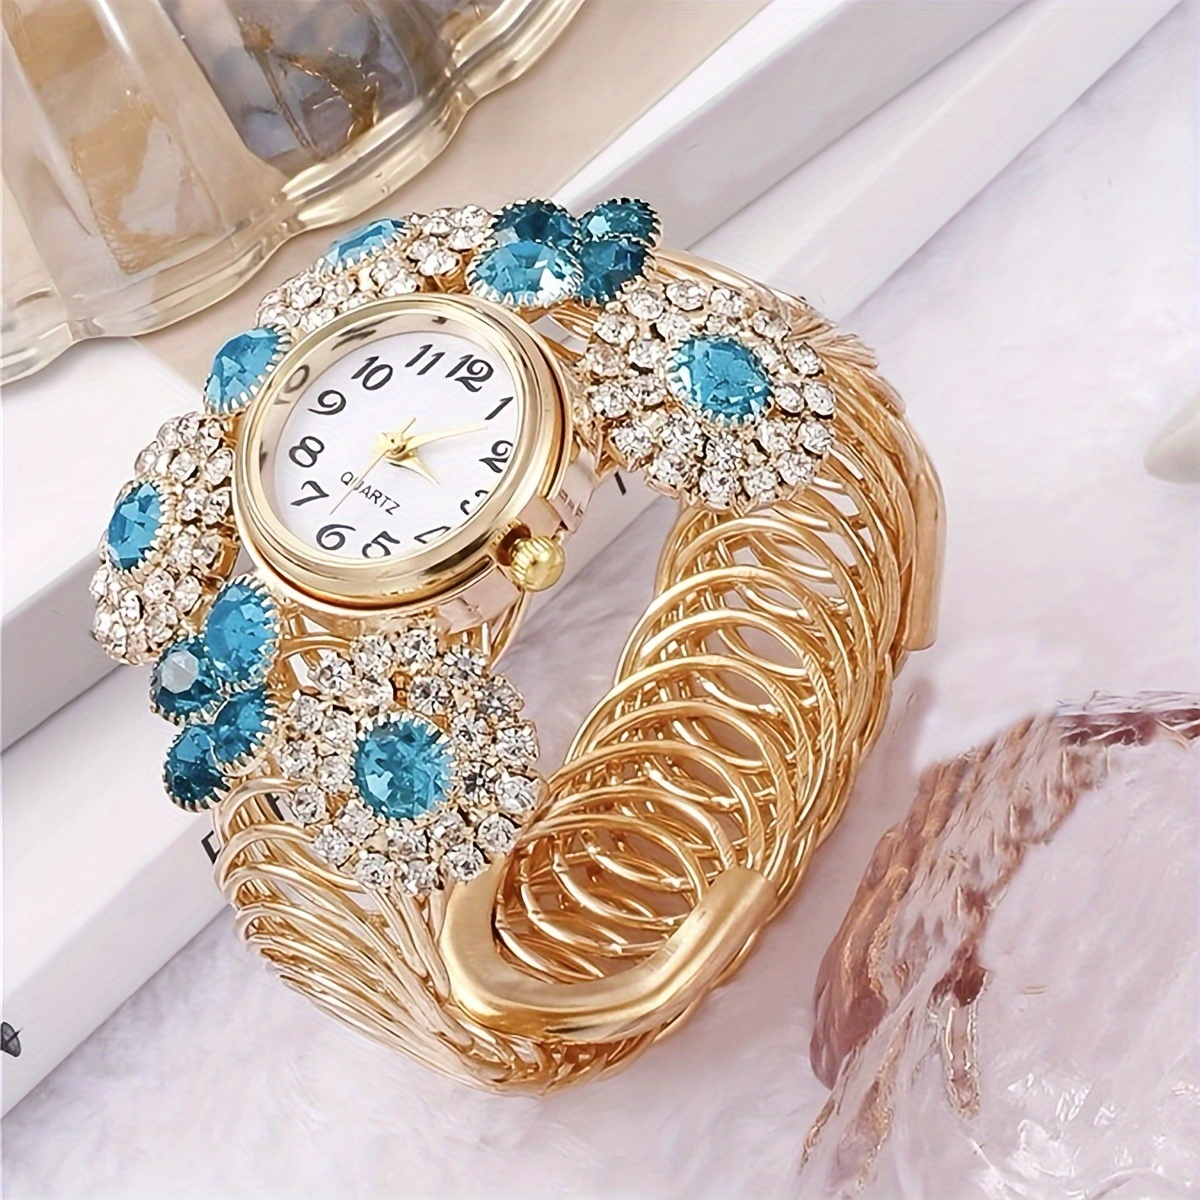 

Elegant Women's Bracelet Watch With Rhinestones, Luxury Boho Alloy Band, Stylish Sophisticated Jewelry Timepiece, Fancy Ladies Quartz Wristwatch Gifts For Eid